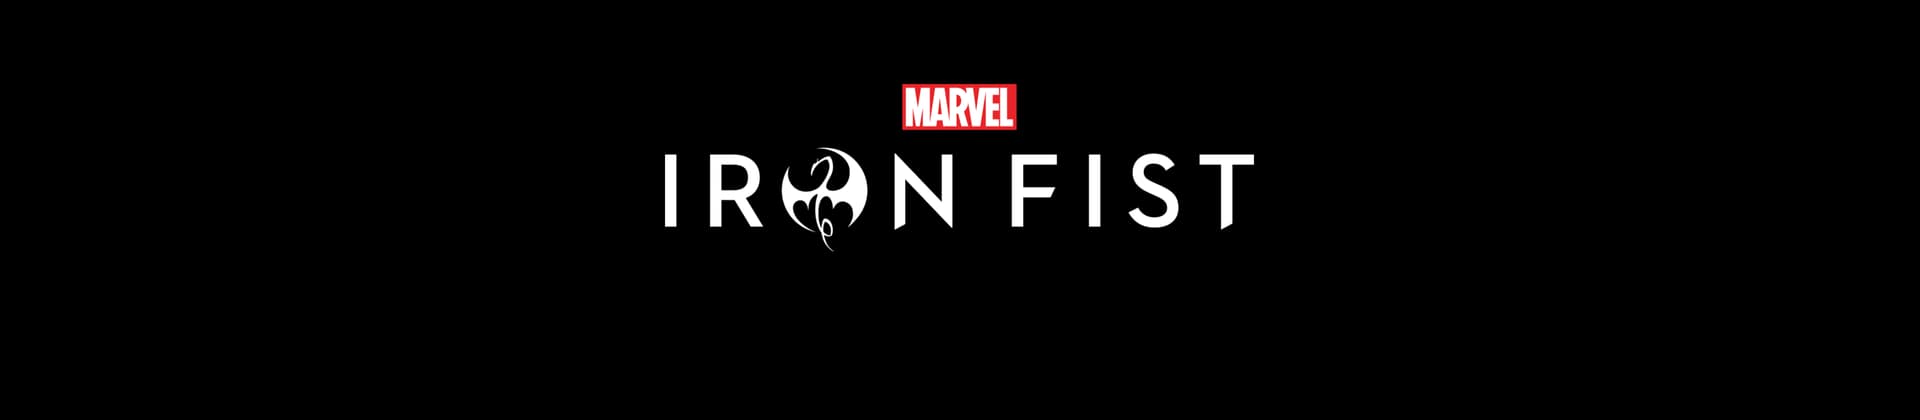 Marvel's Iron Fist | Season 2